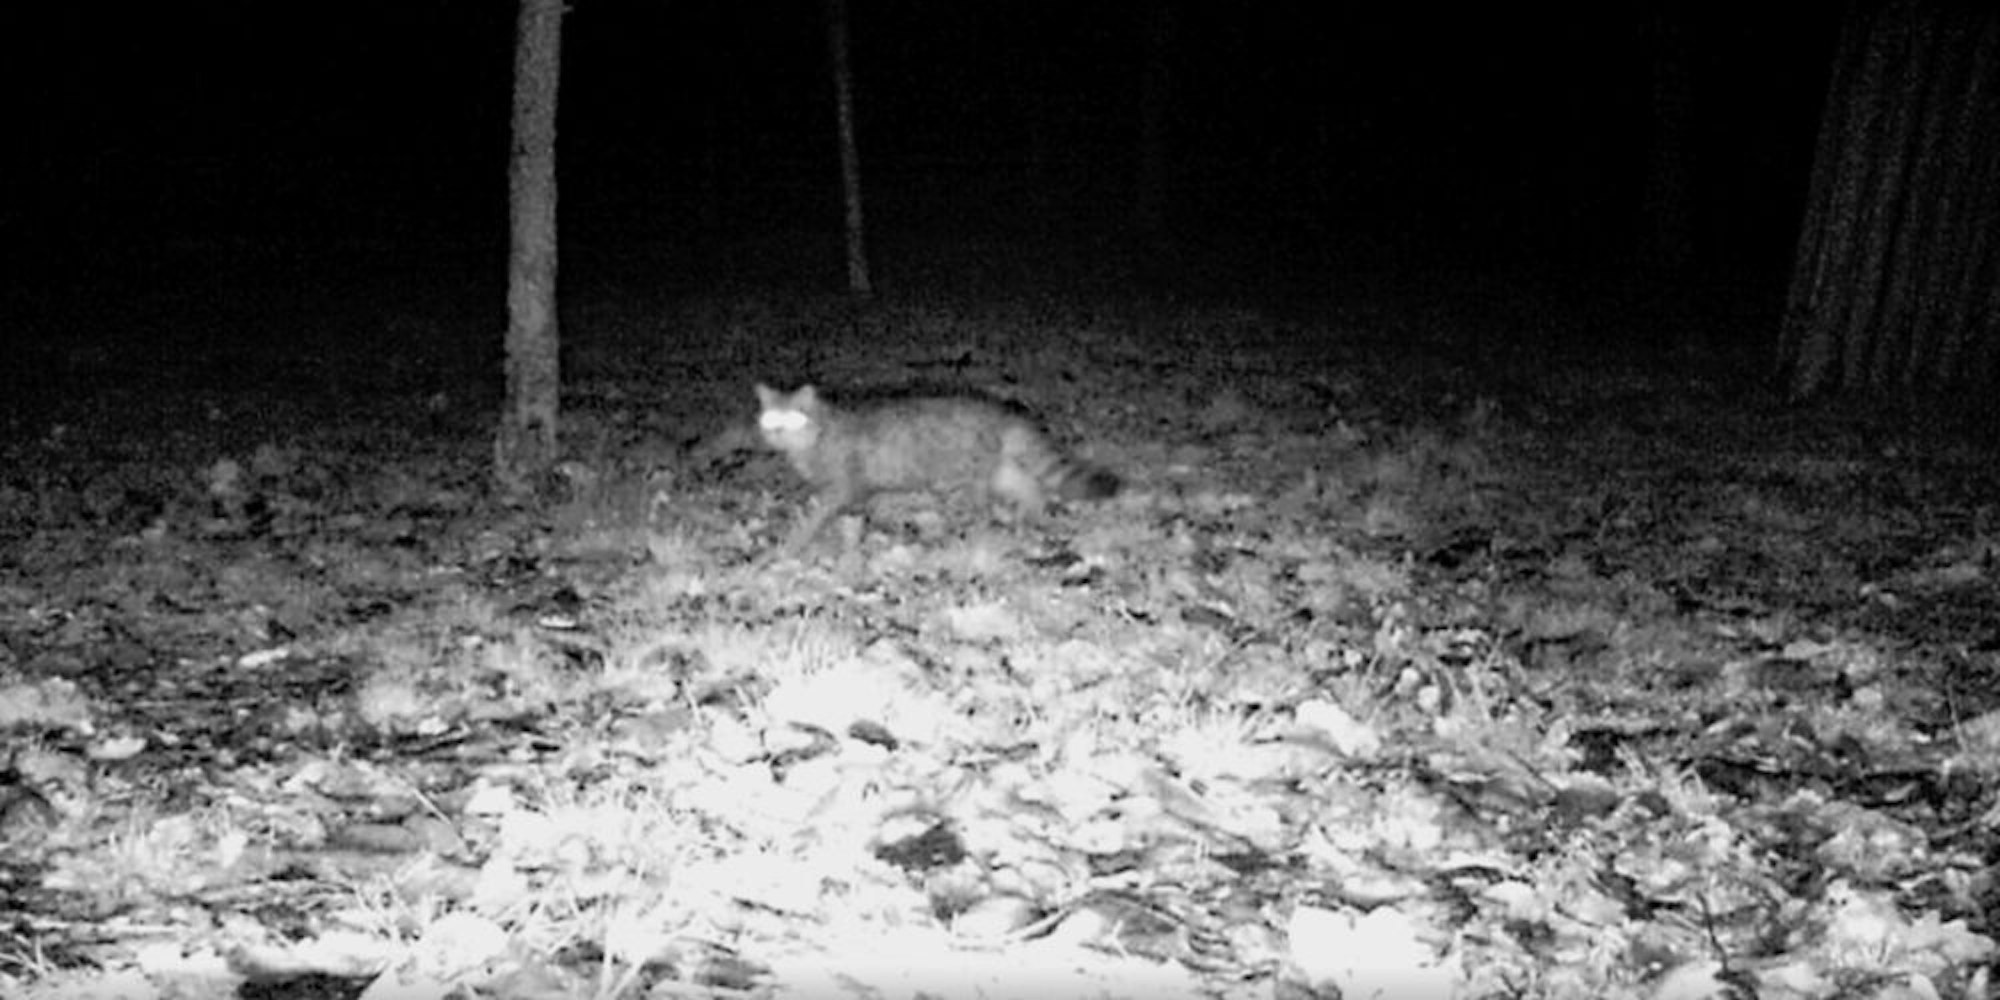 Ein seltener Gast im Museum ist die Wildkatze, die von den Nachtsichtkameras fotografiert wurde.